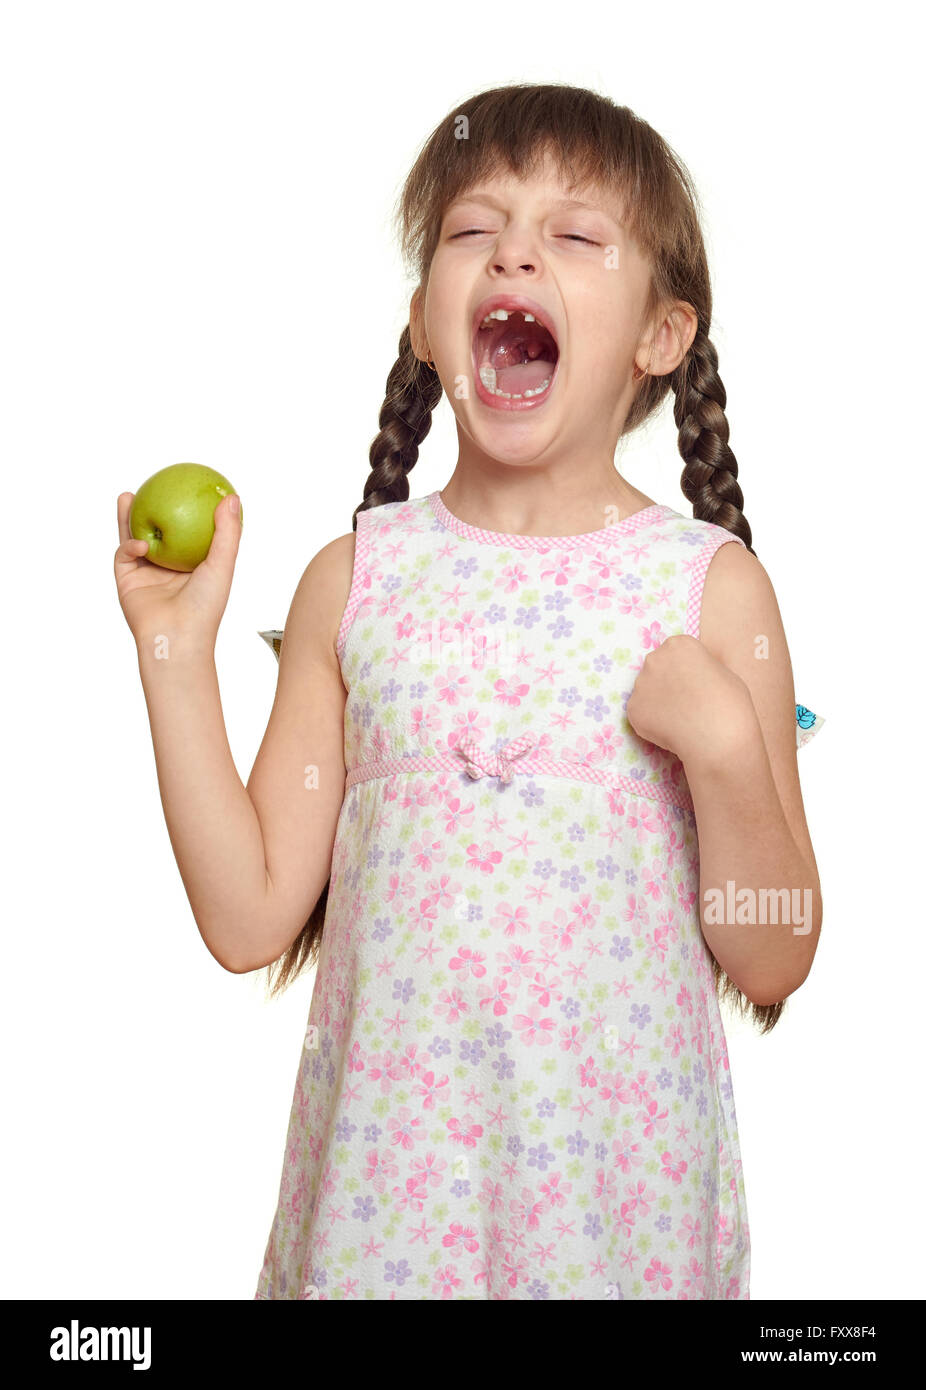 Dente perduto ragazza bambino ritratto con mela verde, studio shoot isolati su sfondo bianco Foto Stock